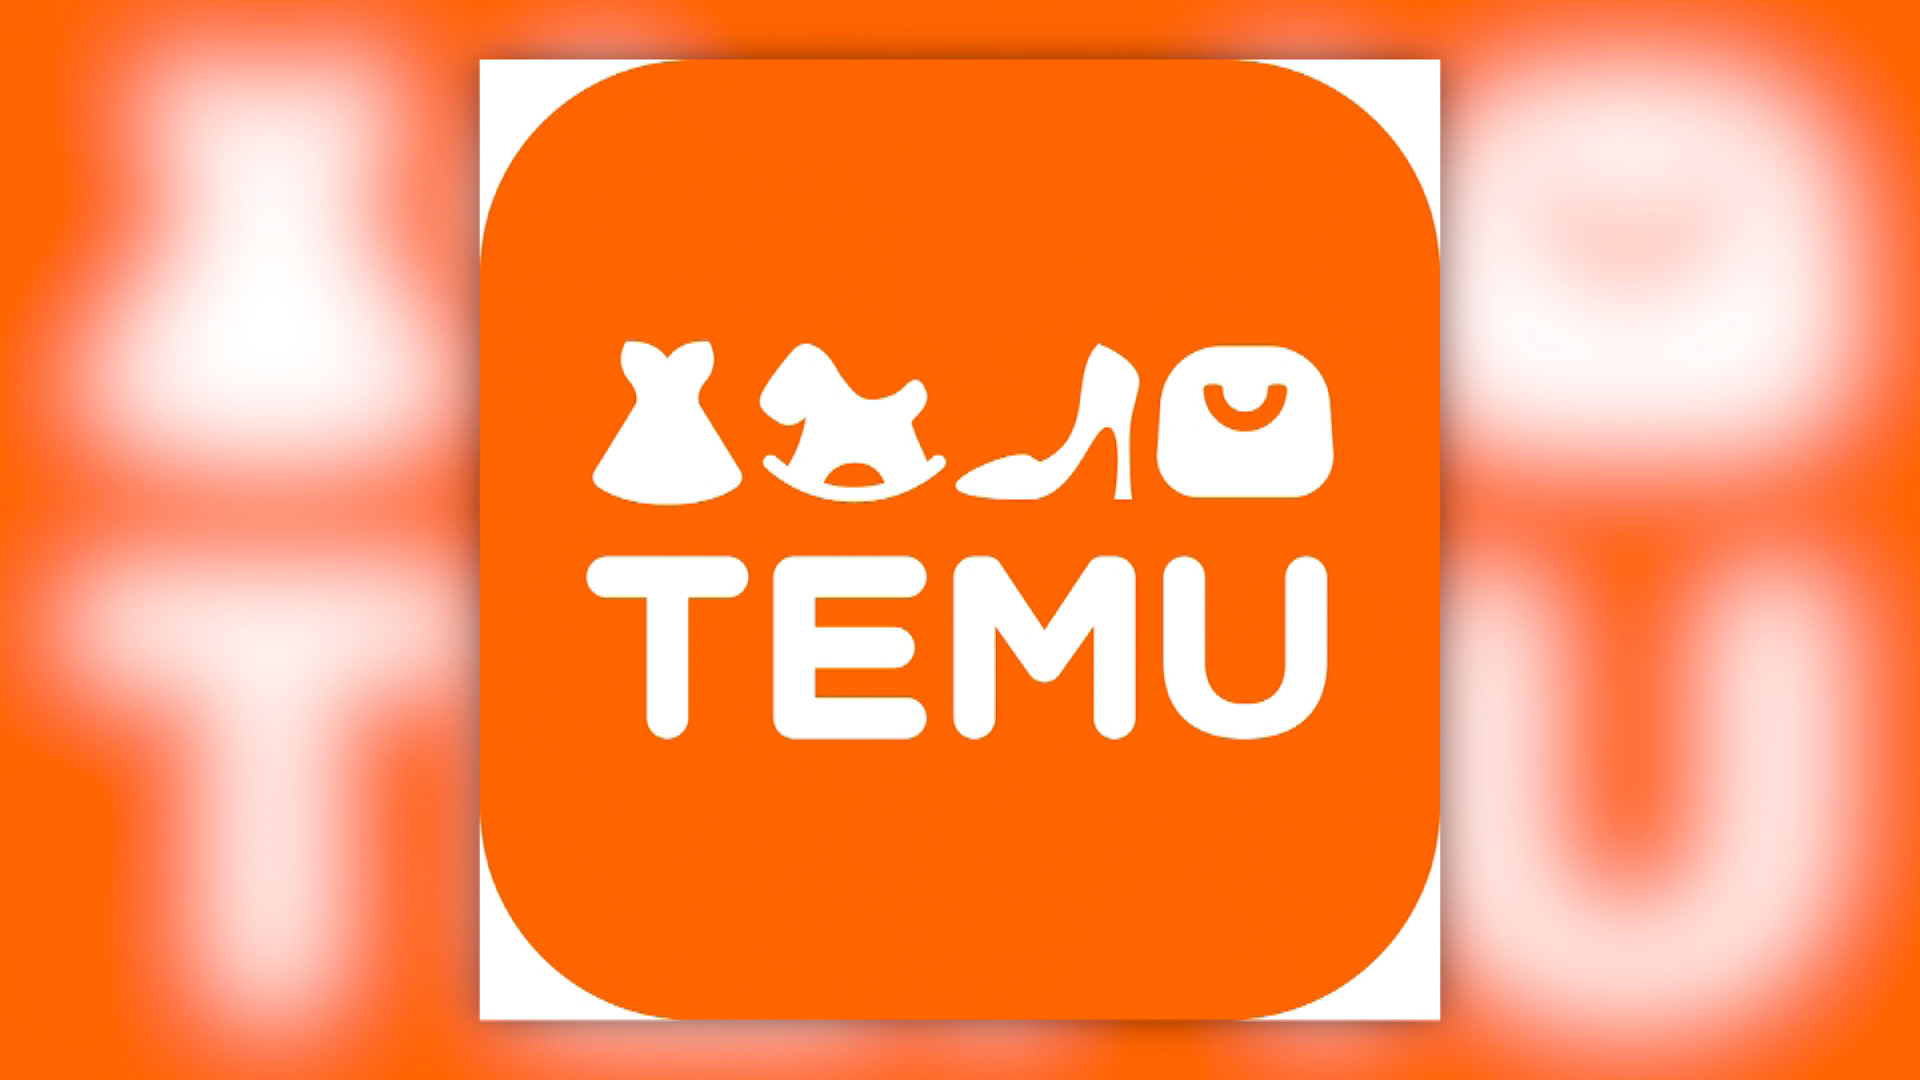 Llega a Chile Temu, la app china que ofrece descuentos en millones de  productos